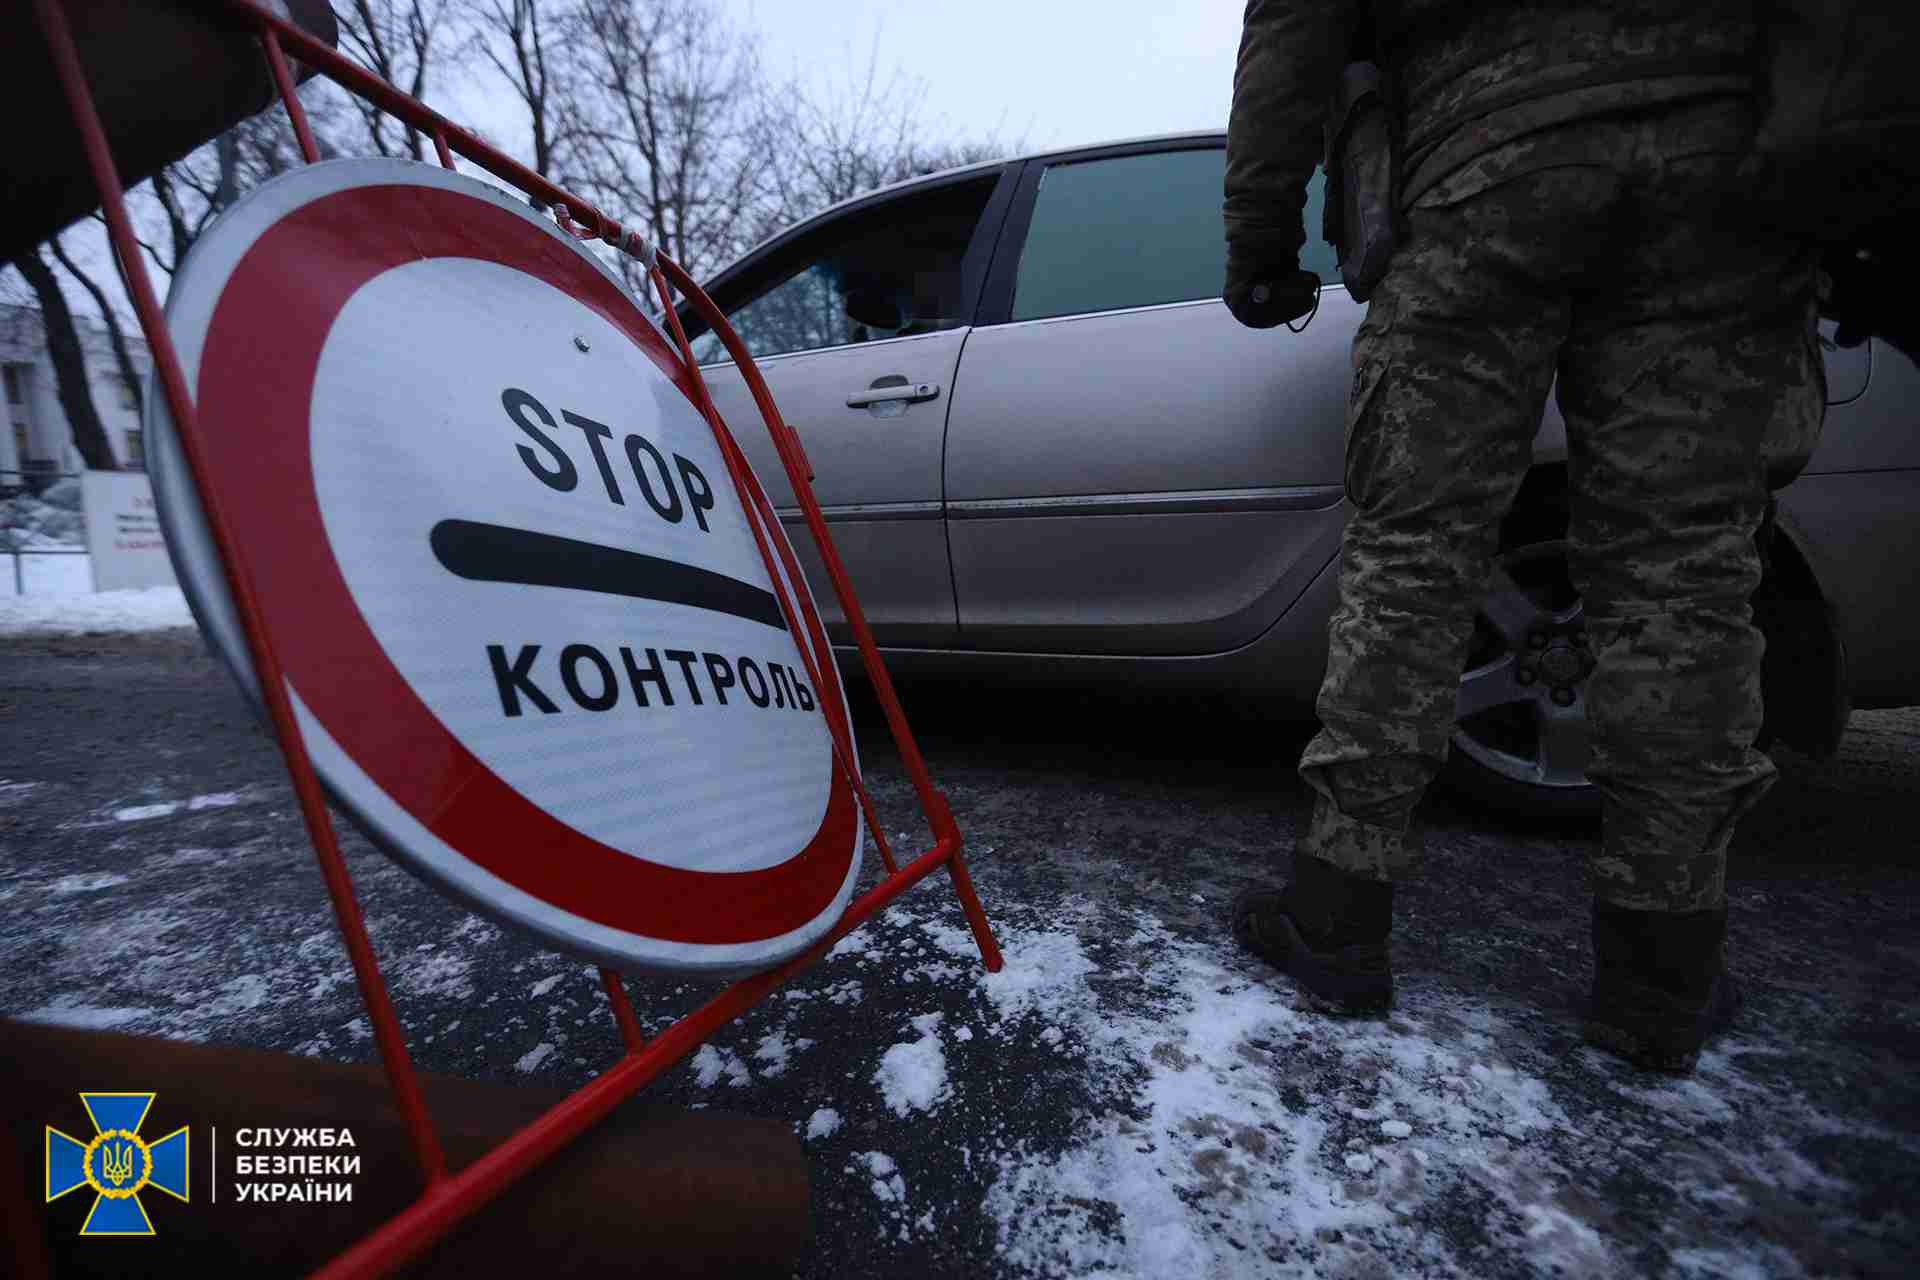 В урядовому кварталі Києва силовики проводять обшуки (ФОТО)